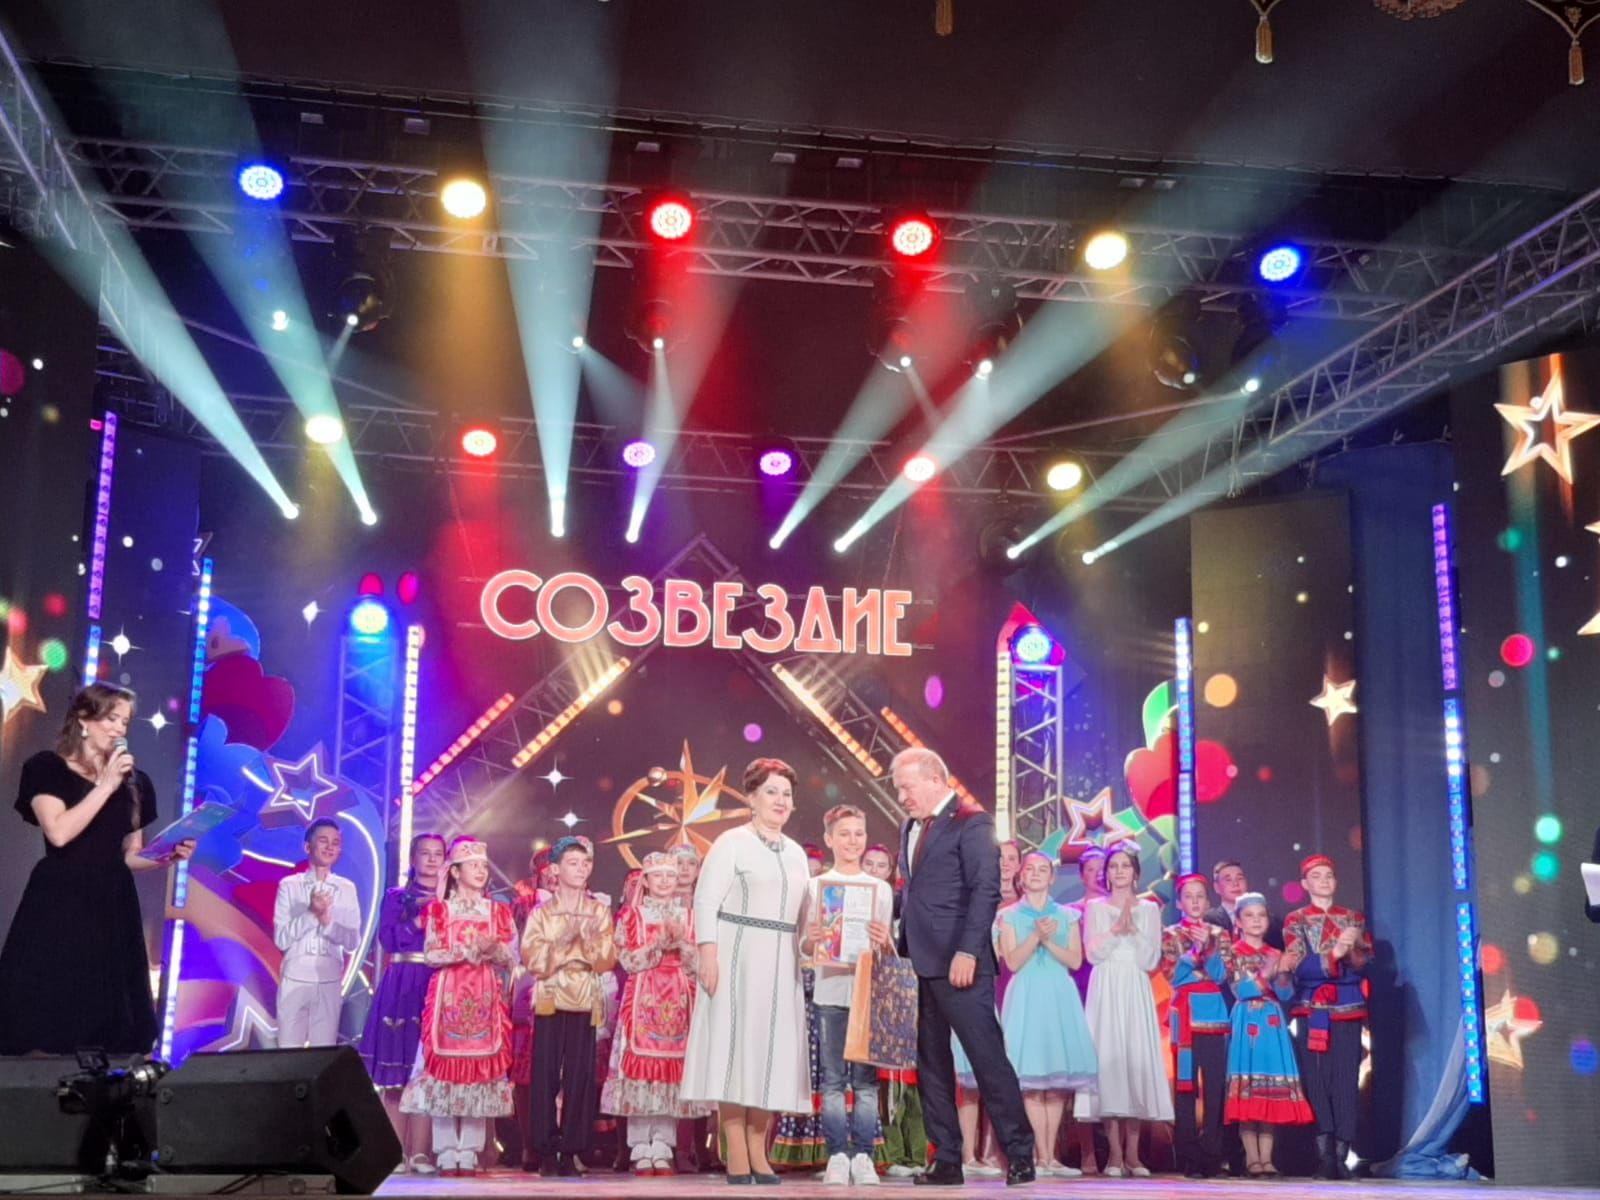 Юные таланты Верхнеуслонского района блестяще выступили на зональном этапе фестиваля "Созвездие - Йолдызлык"